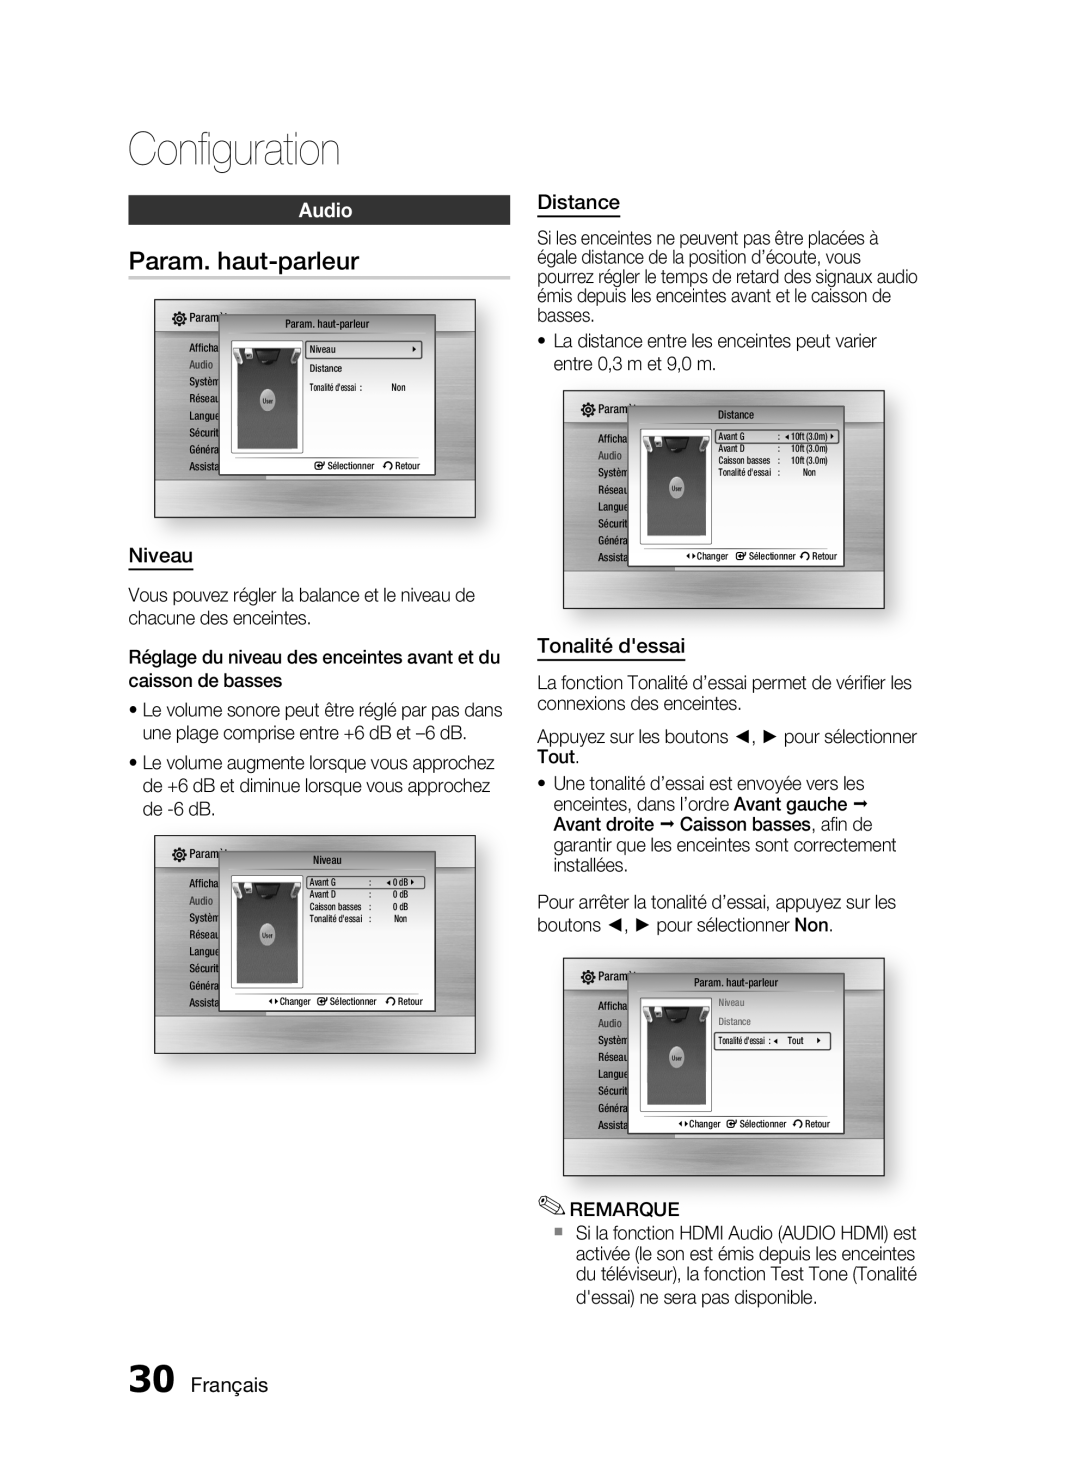 Samsung HT-C6200/XEF manual Param. haut-parleur, Audio, Niveau, Distance, Tonalité dessai, Français, Conﬁguration 